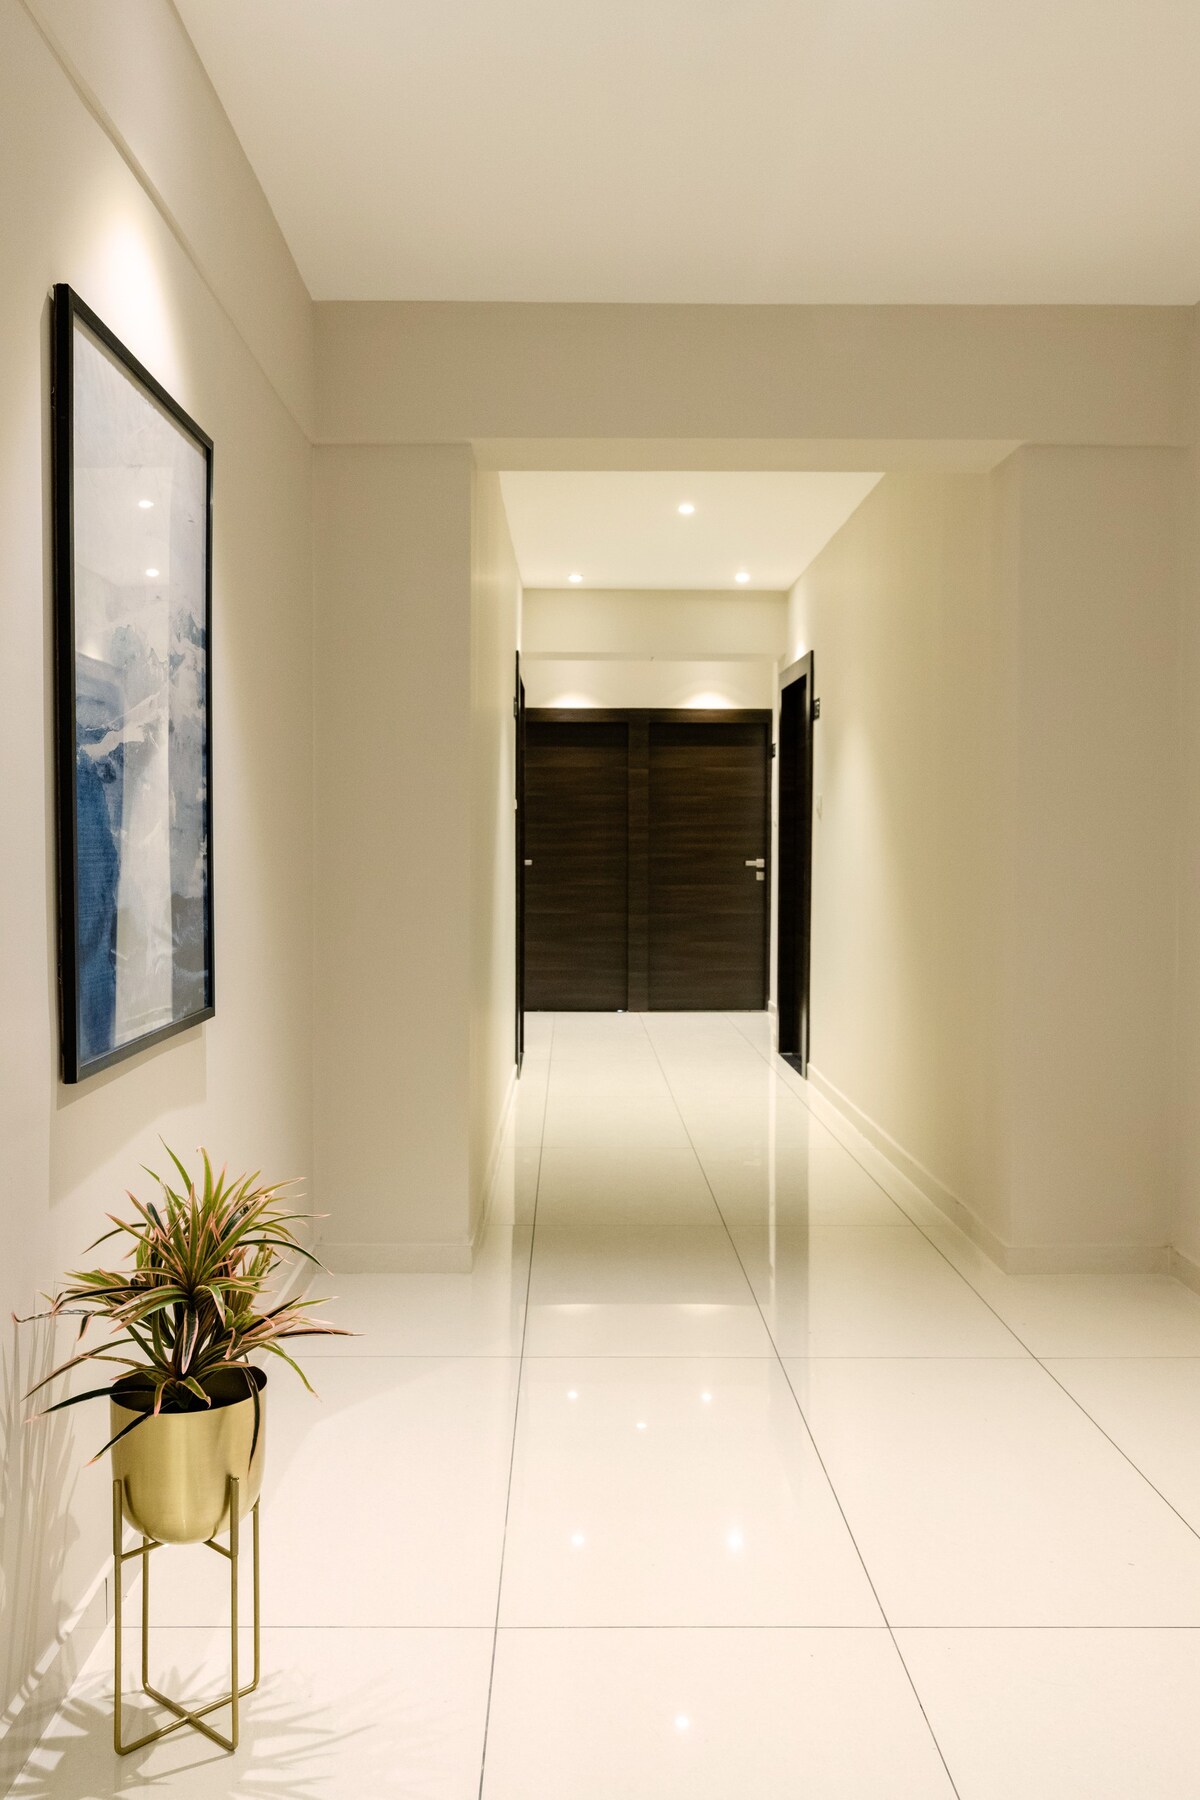 2BHK Luxury Service Apartment-Paramount Suites